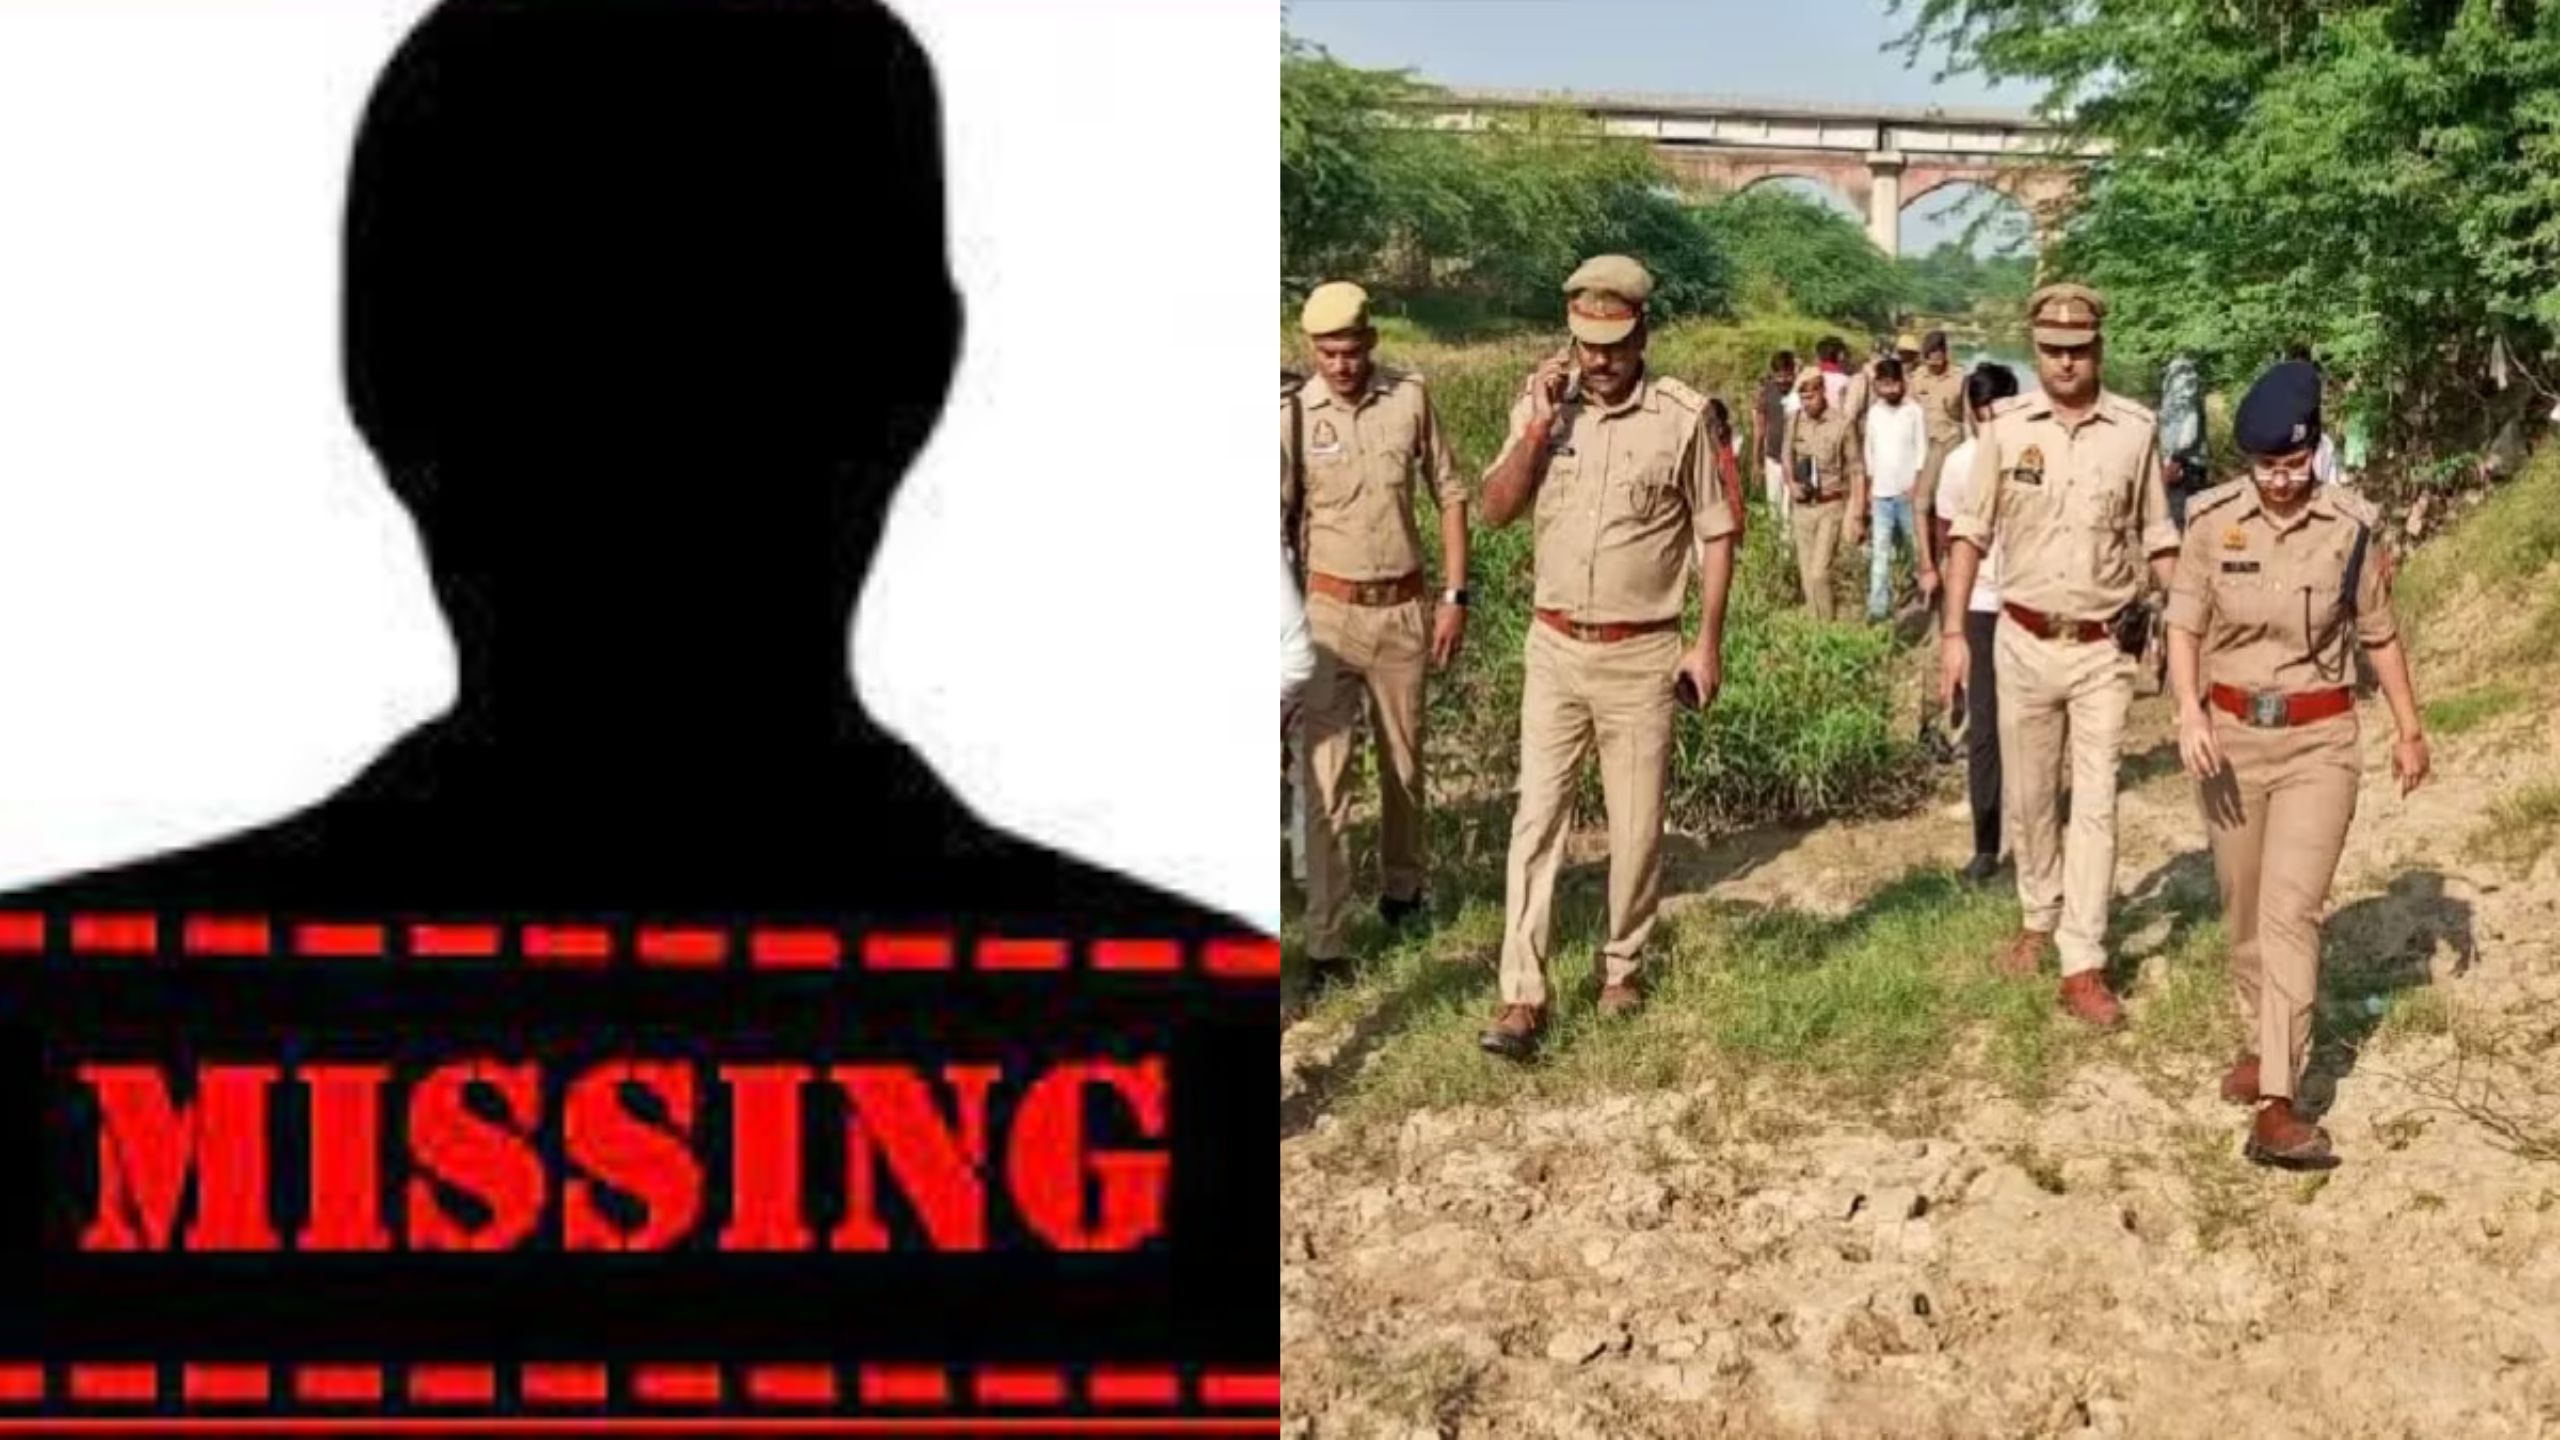 हमीरपुर में 10 साल से लापता युवक की तलाश में जुटे परिजन, युवक की पत्नी व उसके आशिक पर हत्या का आरोप